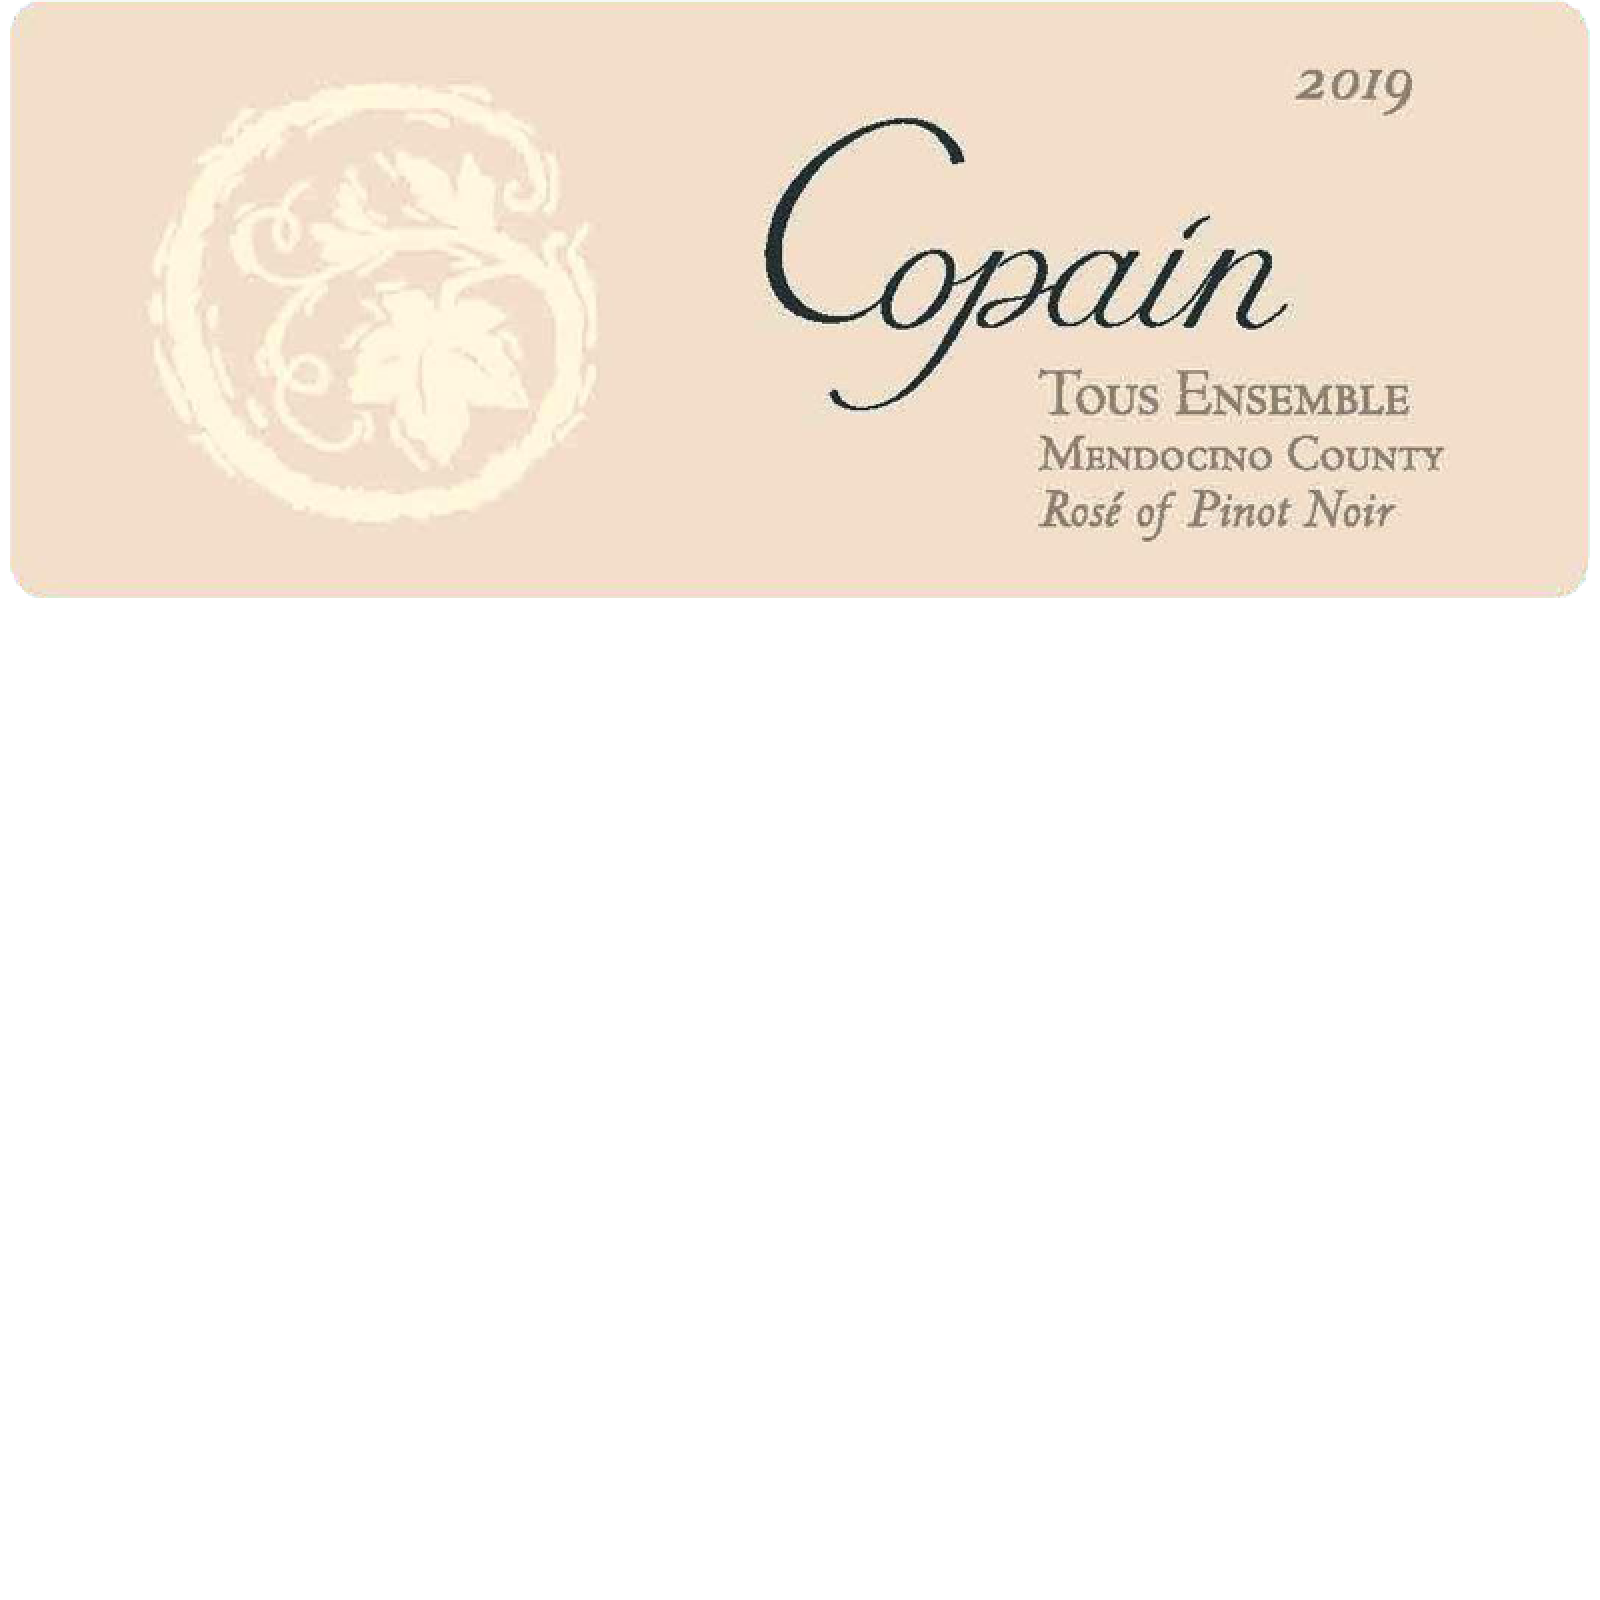 2019 Copain Tous Ensemble Rosé of Pinot Noir